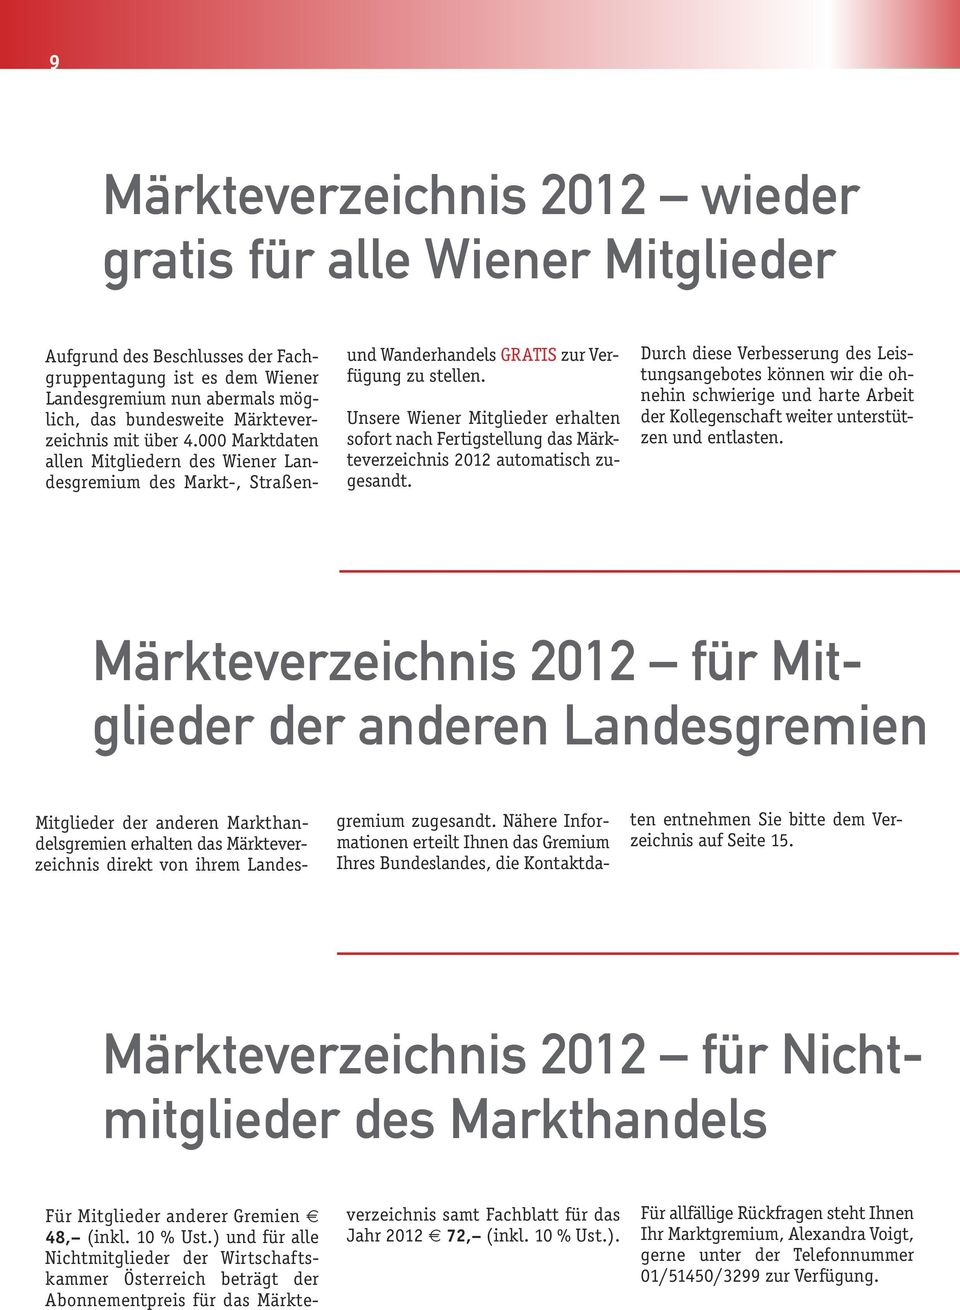 Unsere Wiener Mitglieder erhalten sofort nach Fertigstellung das Märkteverzeichnis 2012 automatisch zugesandt.